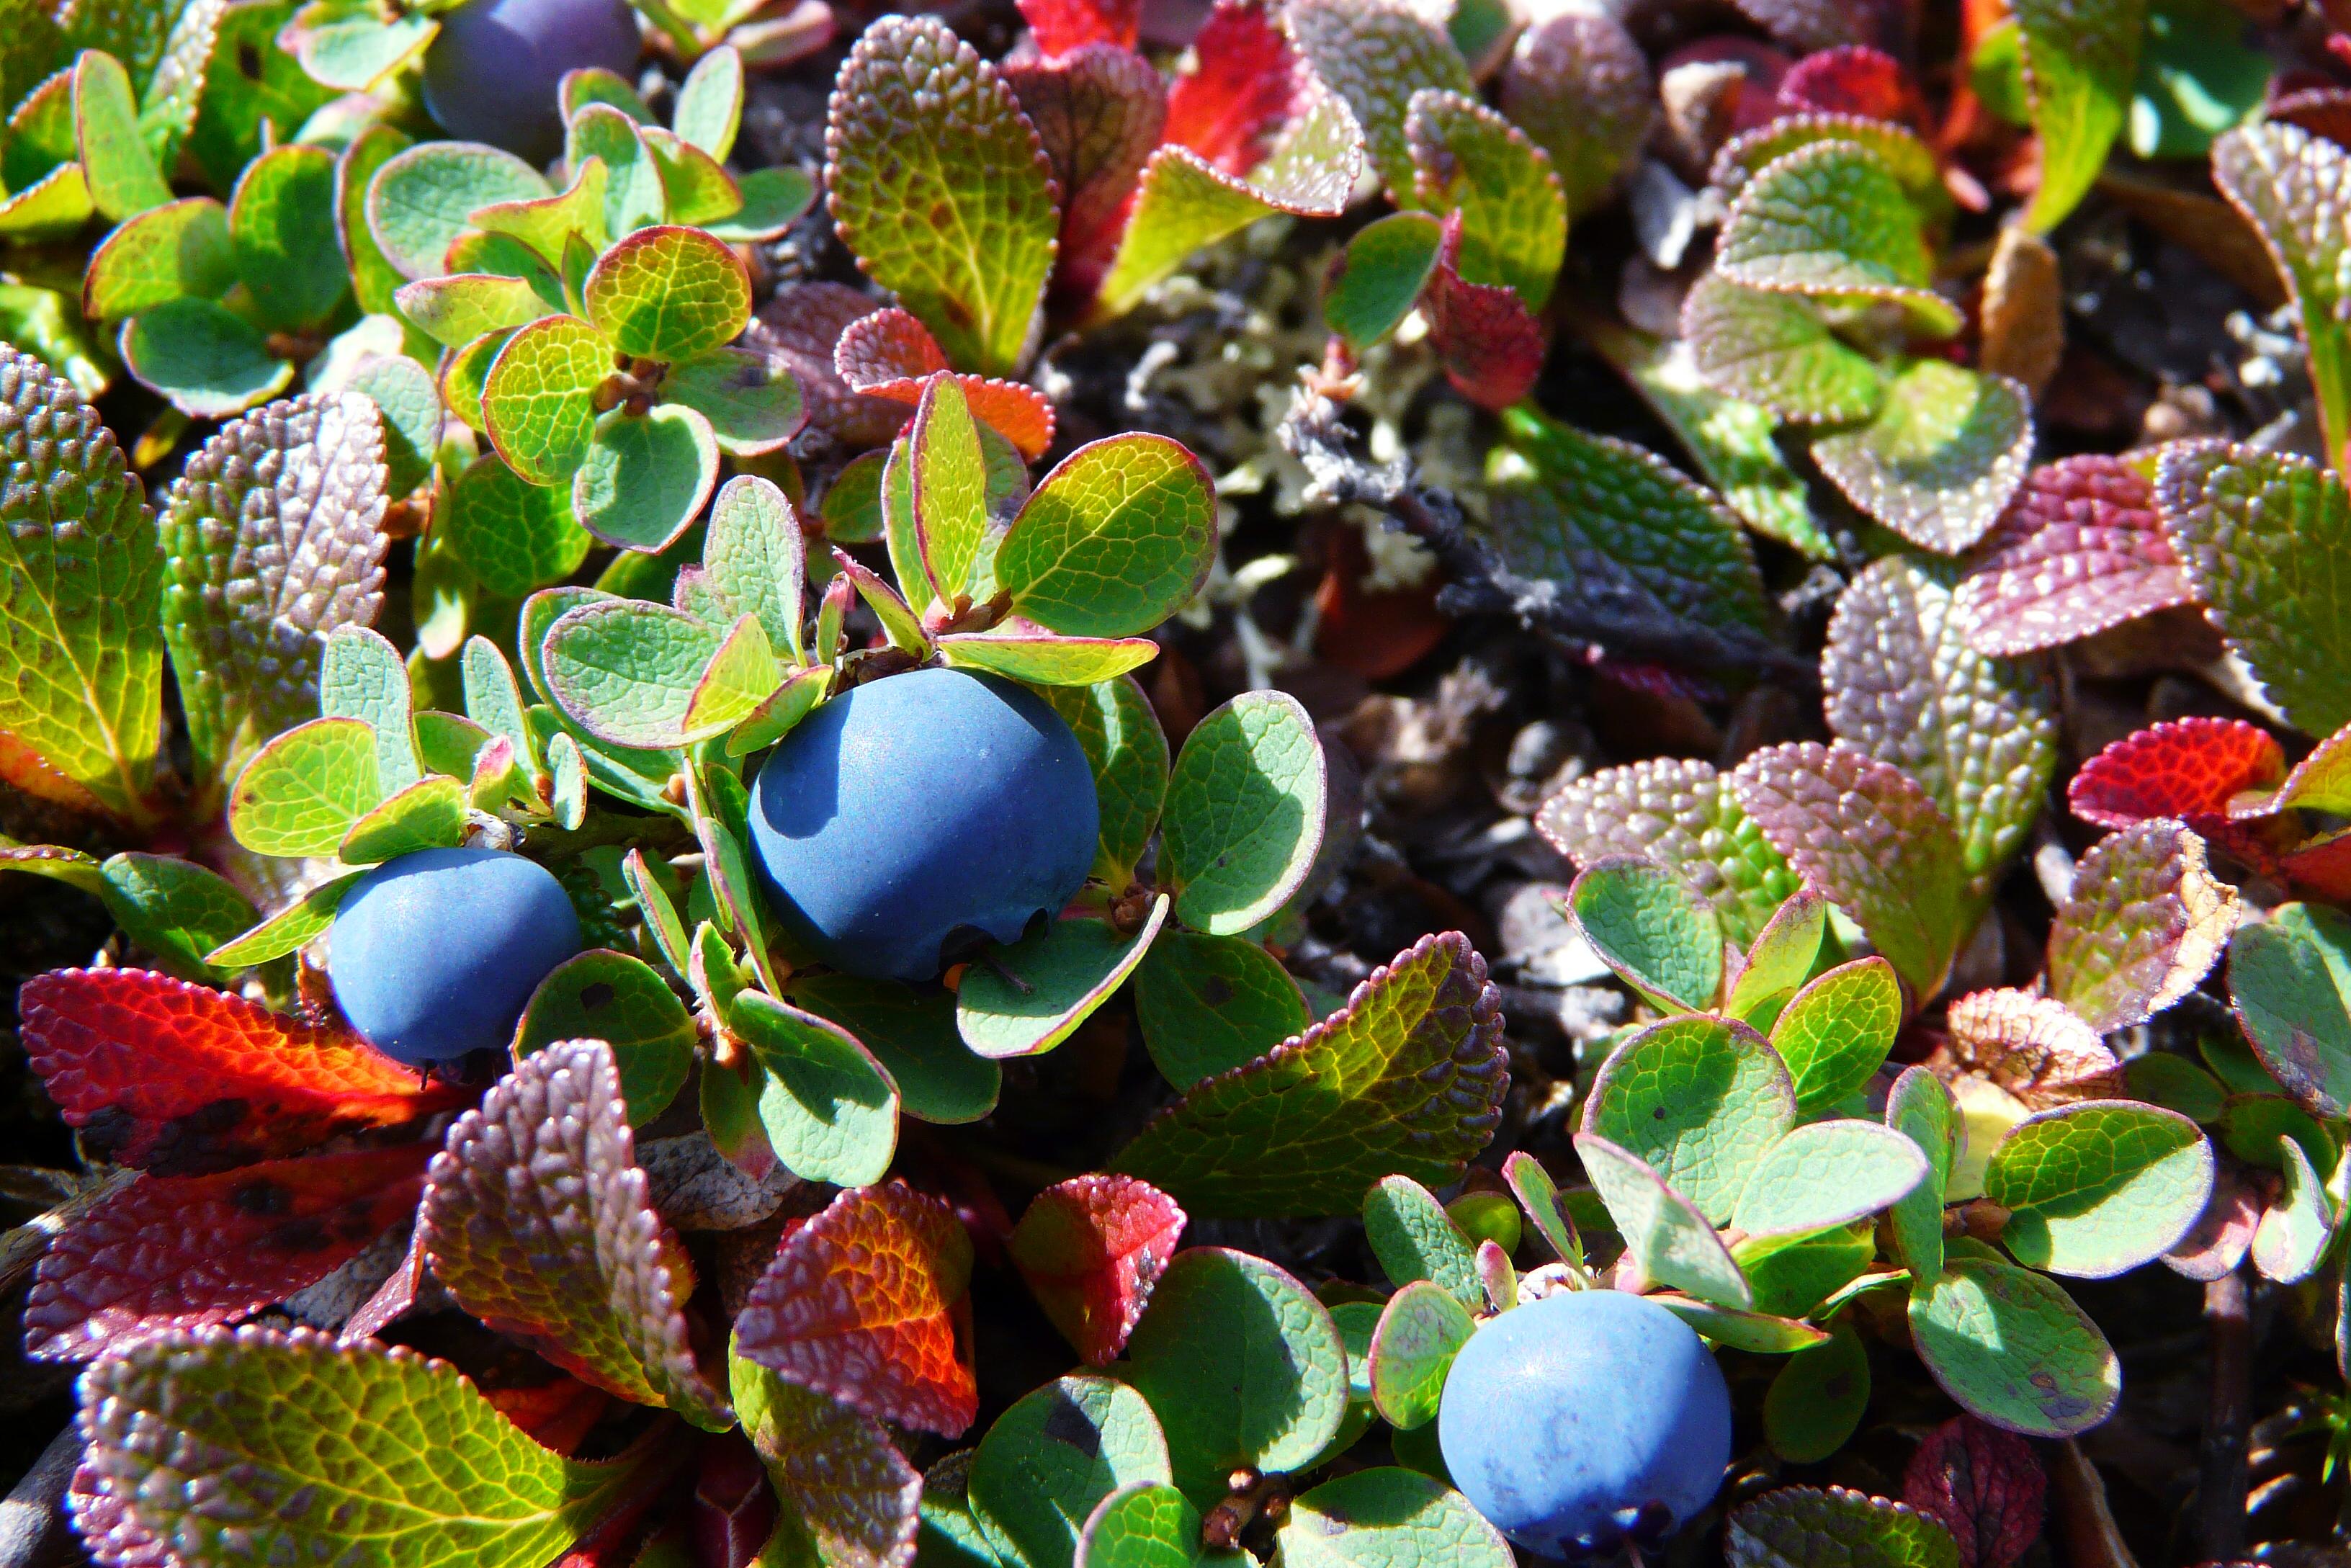 Arctic blueberries